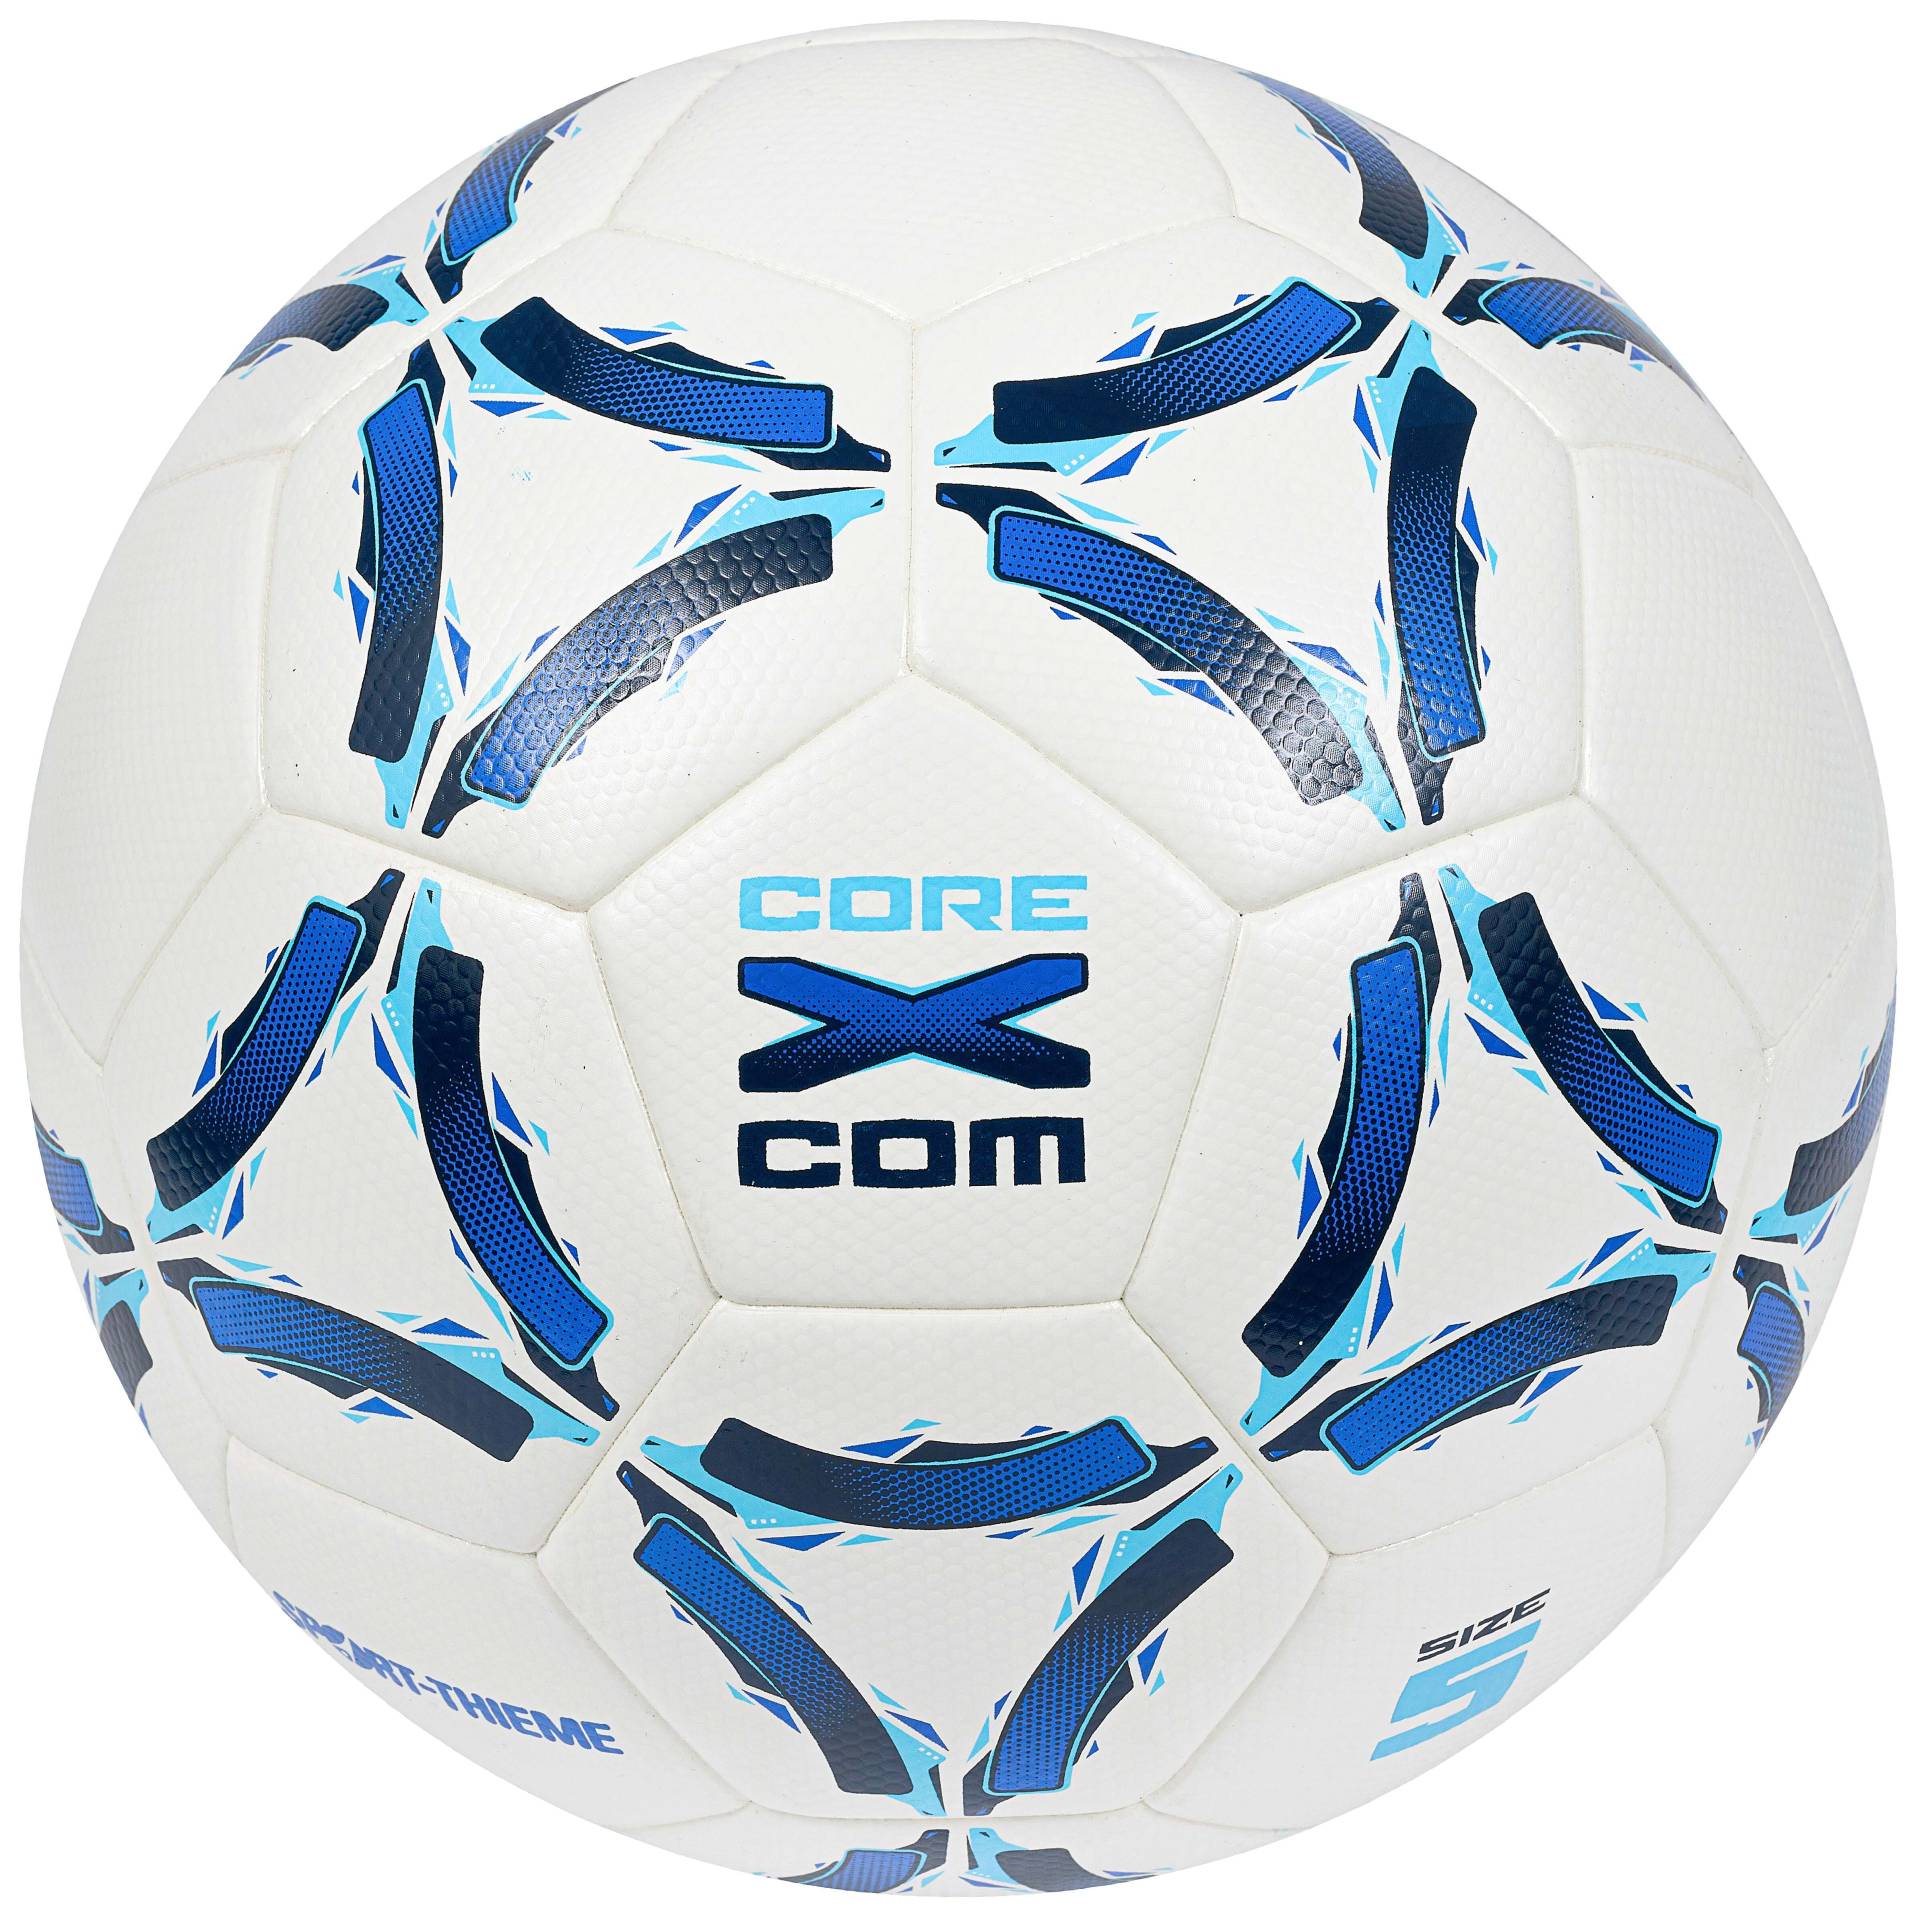 Sport-Thieme Fußball "CoreX Com" von Sport-Thieme